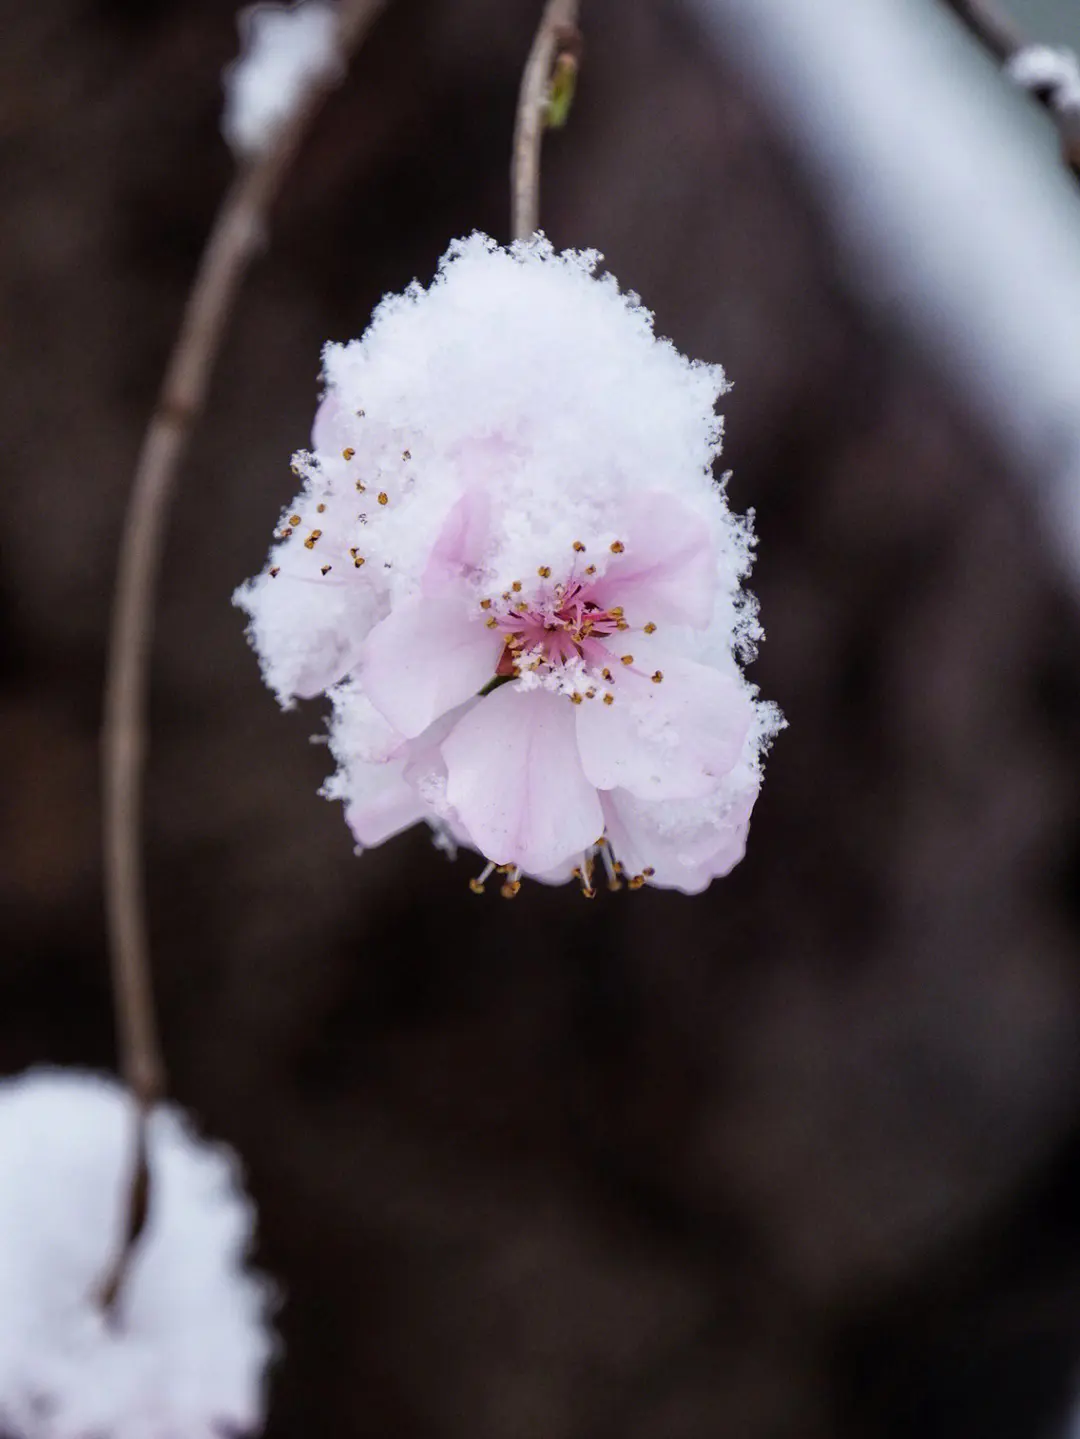 好看的冬日花卉图片欣赏大全 冬季花卉植物真实图片9张